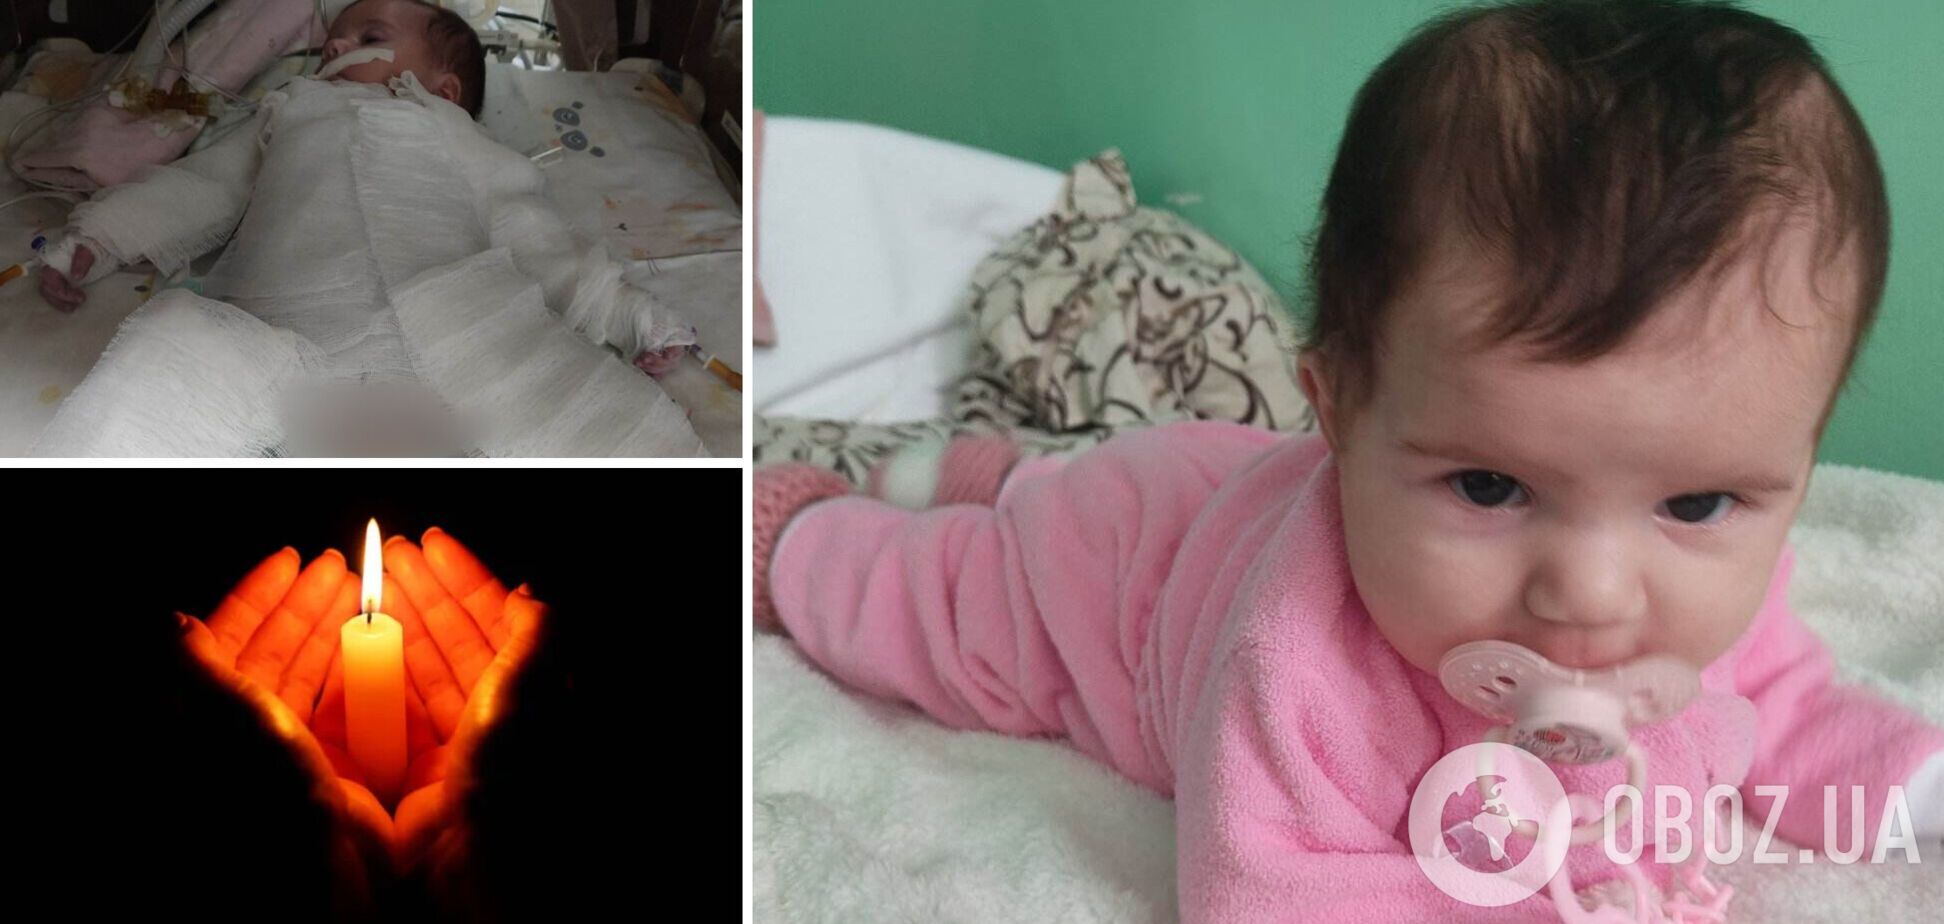 Маленькая девочка буквально сгорела на операции: подробности трагедии в городе Ривне